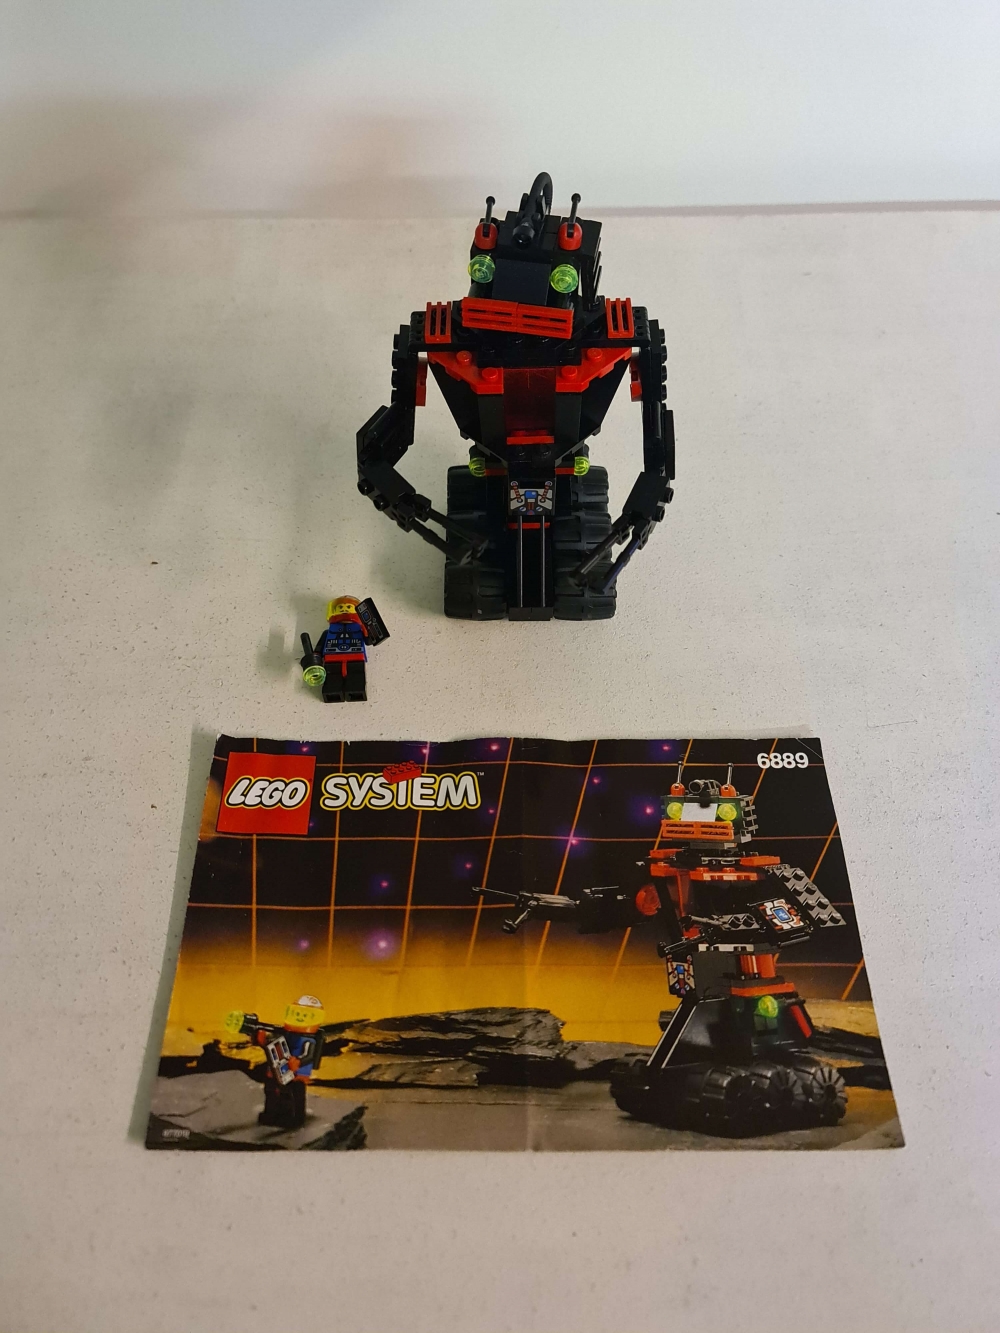 Sett 6889 fra Lego Space serien.
Flott sett.
Komplett med manual.